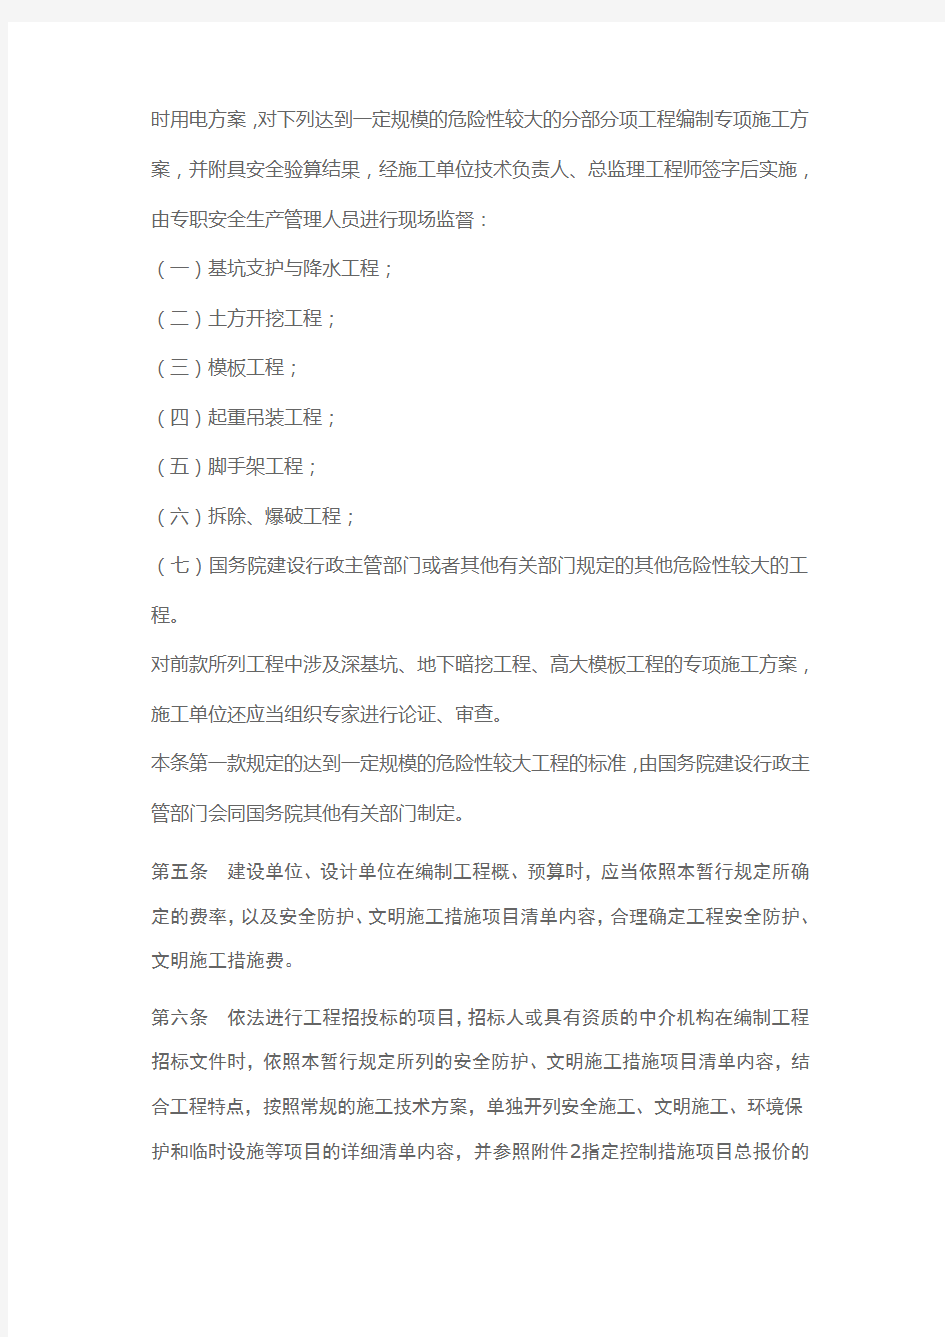 上海市建设工程安全防护、文明施工措施费用管理暂行规定(沪建交2006第445号文)